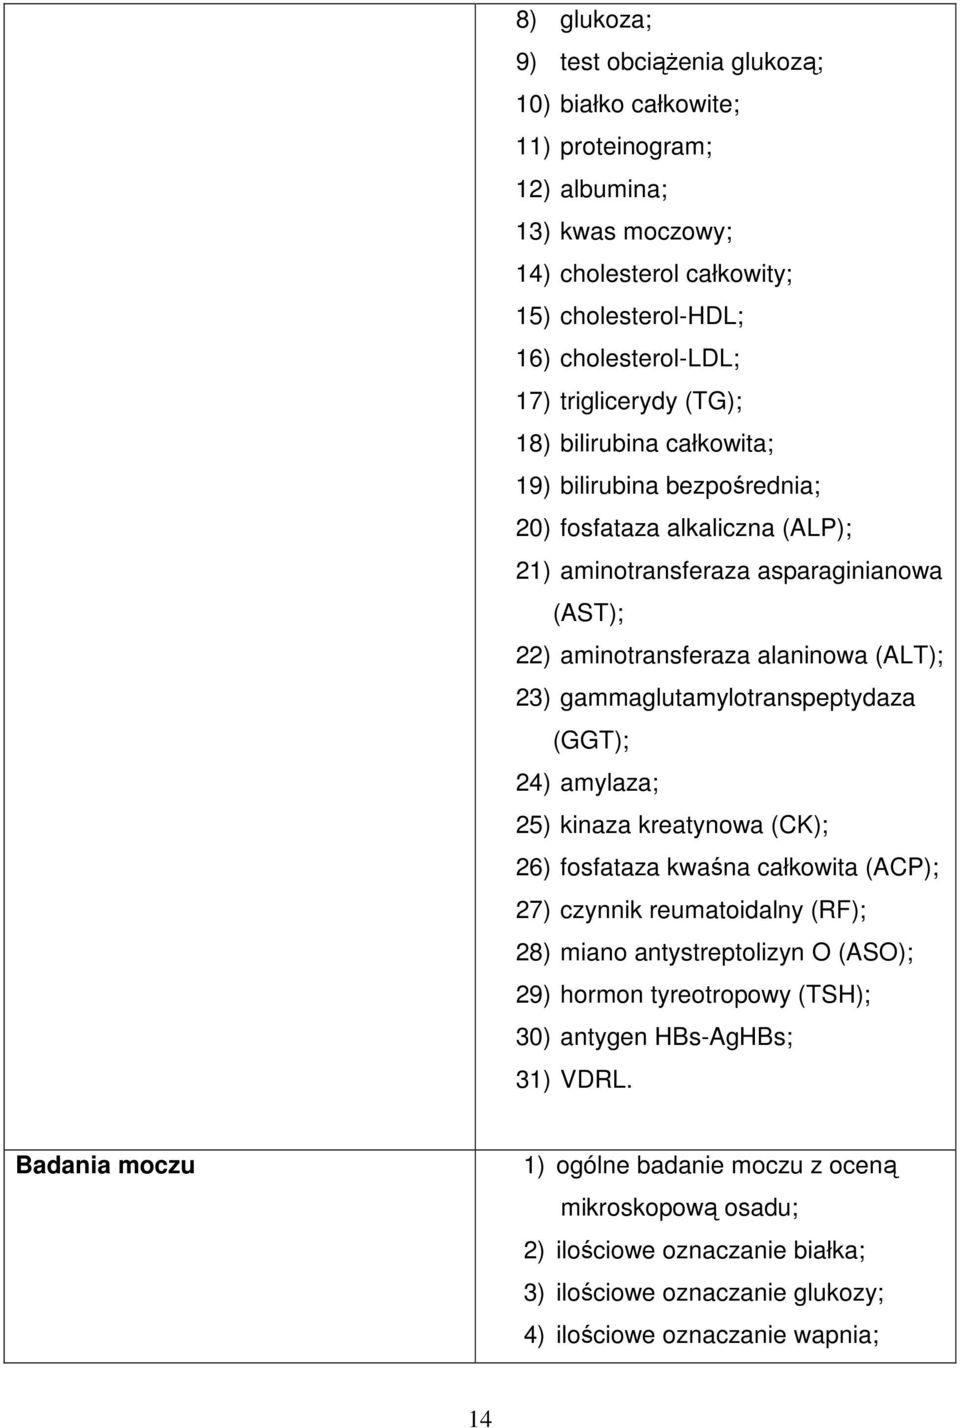 gammaglutamylotranspeptydaza (GGT); 24) amylaza; 25) kinaza kreatynowa (CK); 26) fosfataza kwaśna całkowita (ACP); 27) czynnik reumatoidalny (RF); 28) miano antystreptolizyn O (ASO); 29) hormon